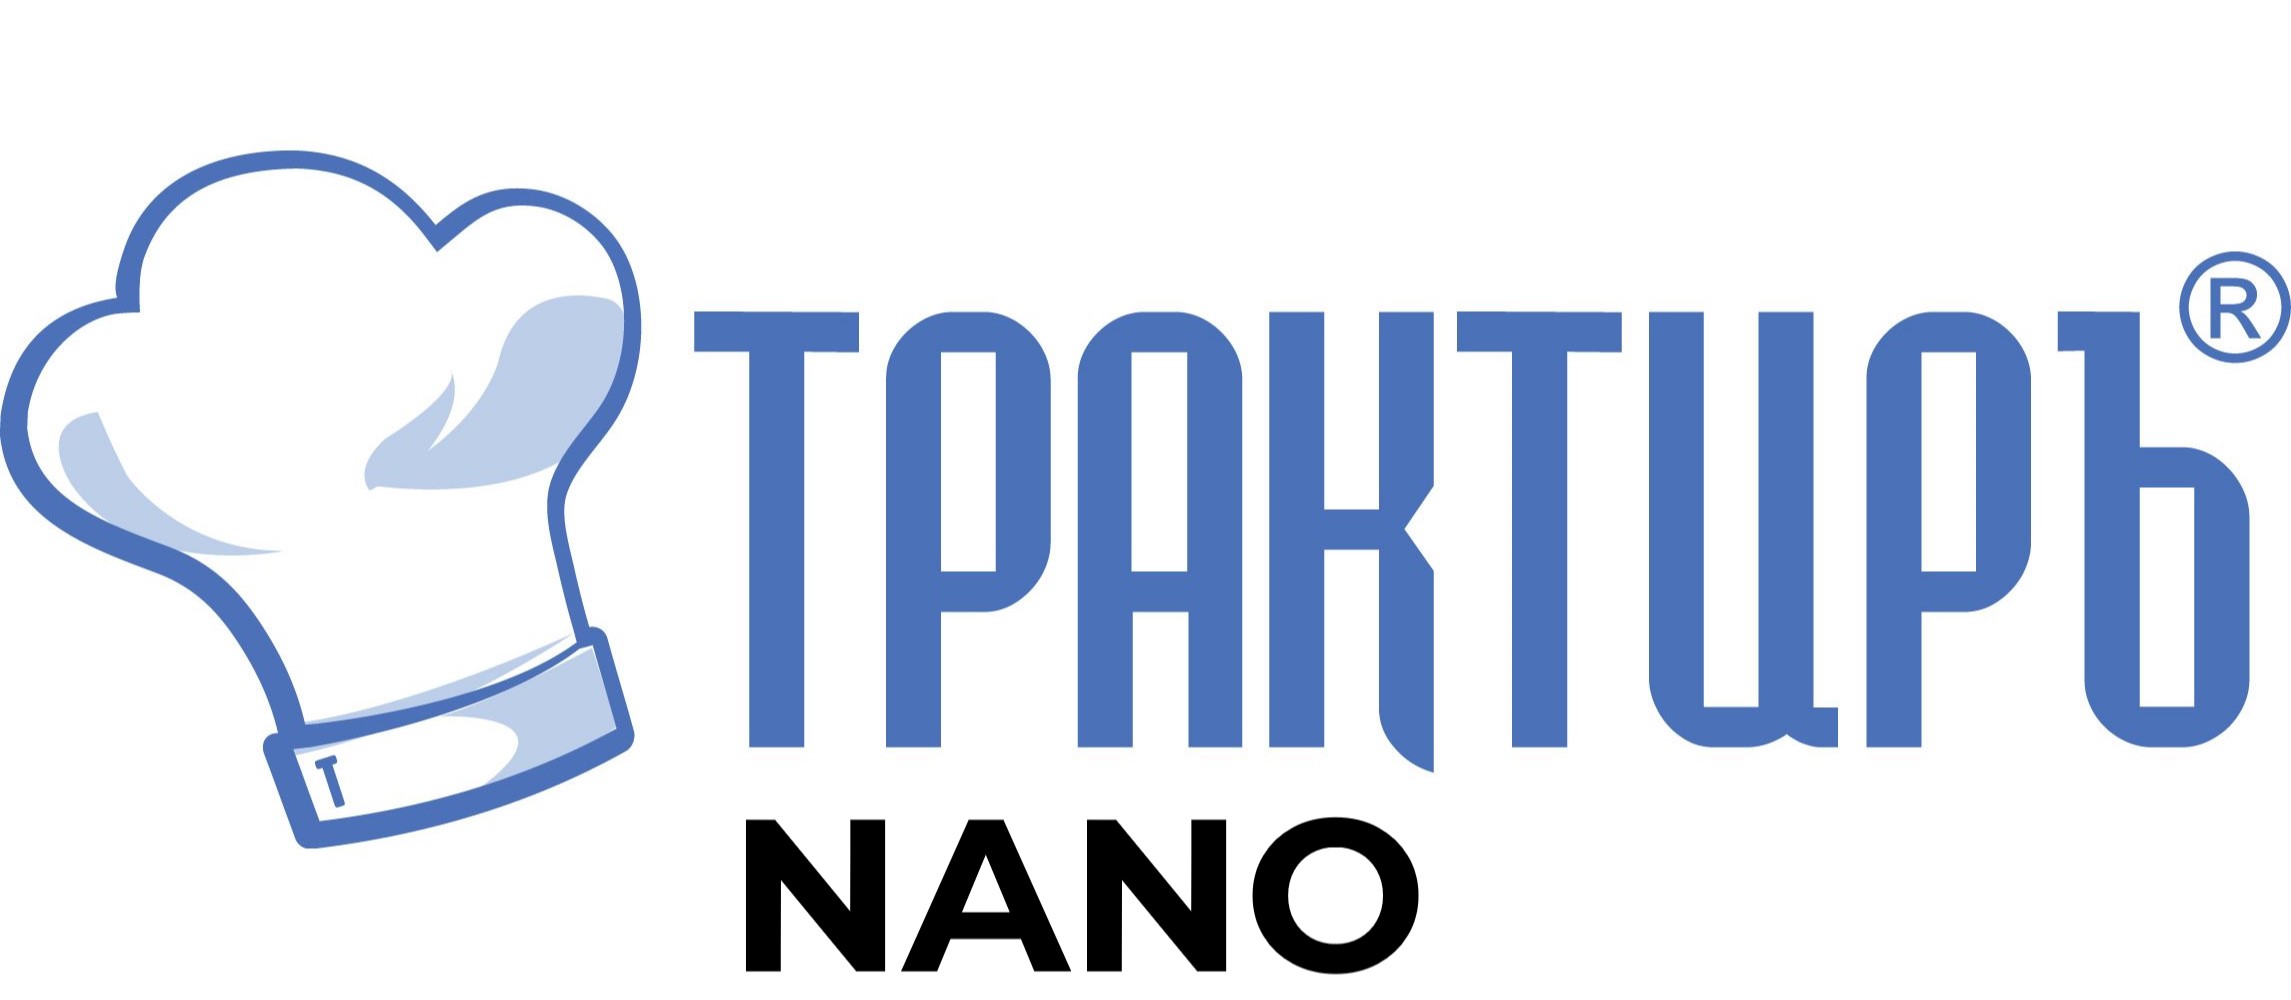 Конфигурация Трактиръ: Nano (Основная поставка) в Мытищах